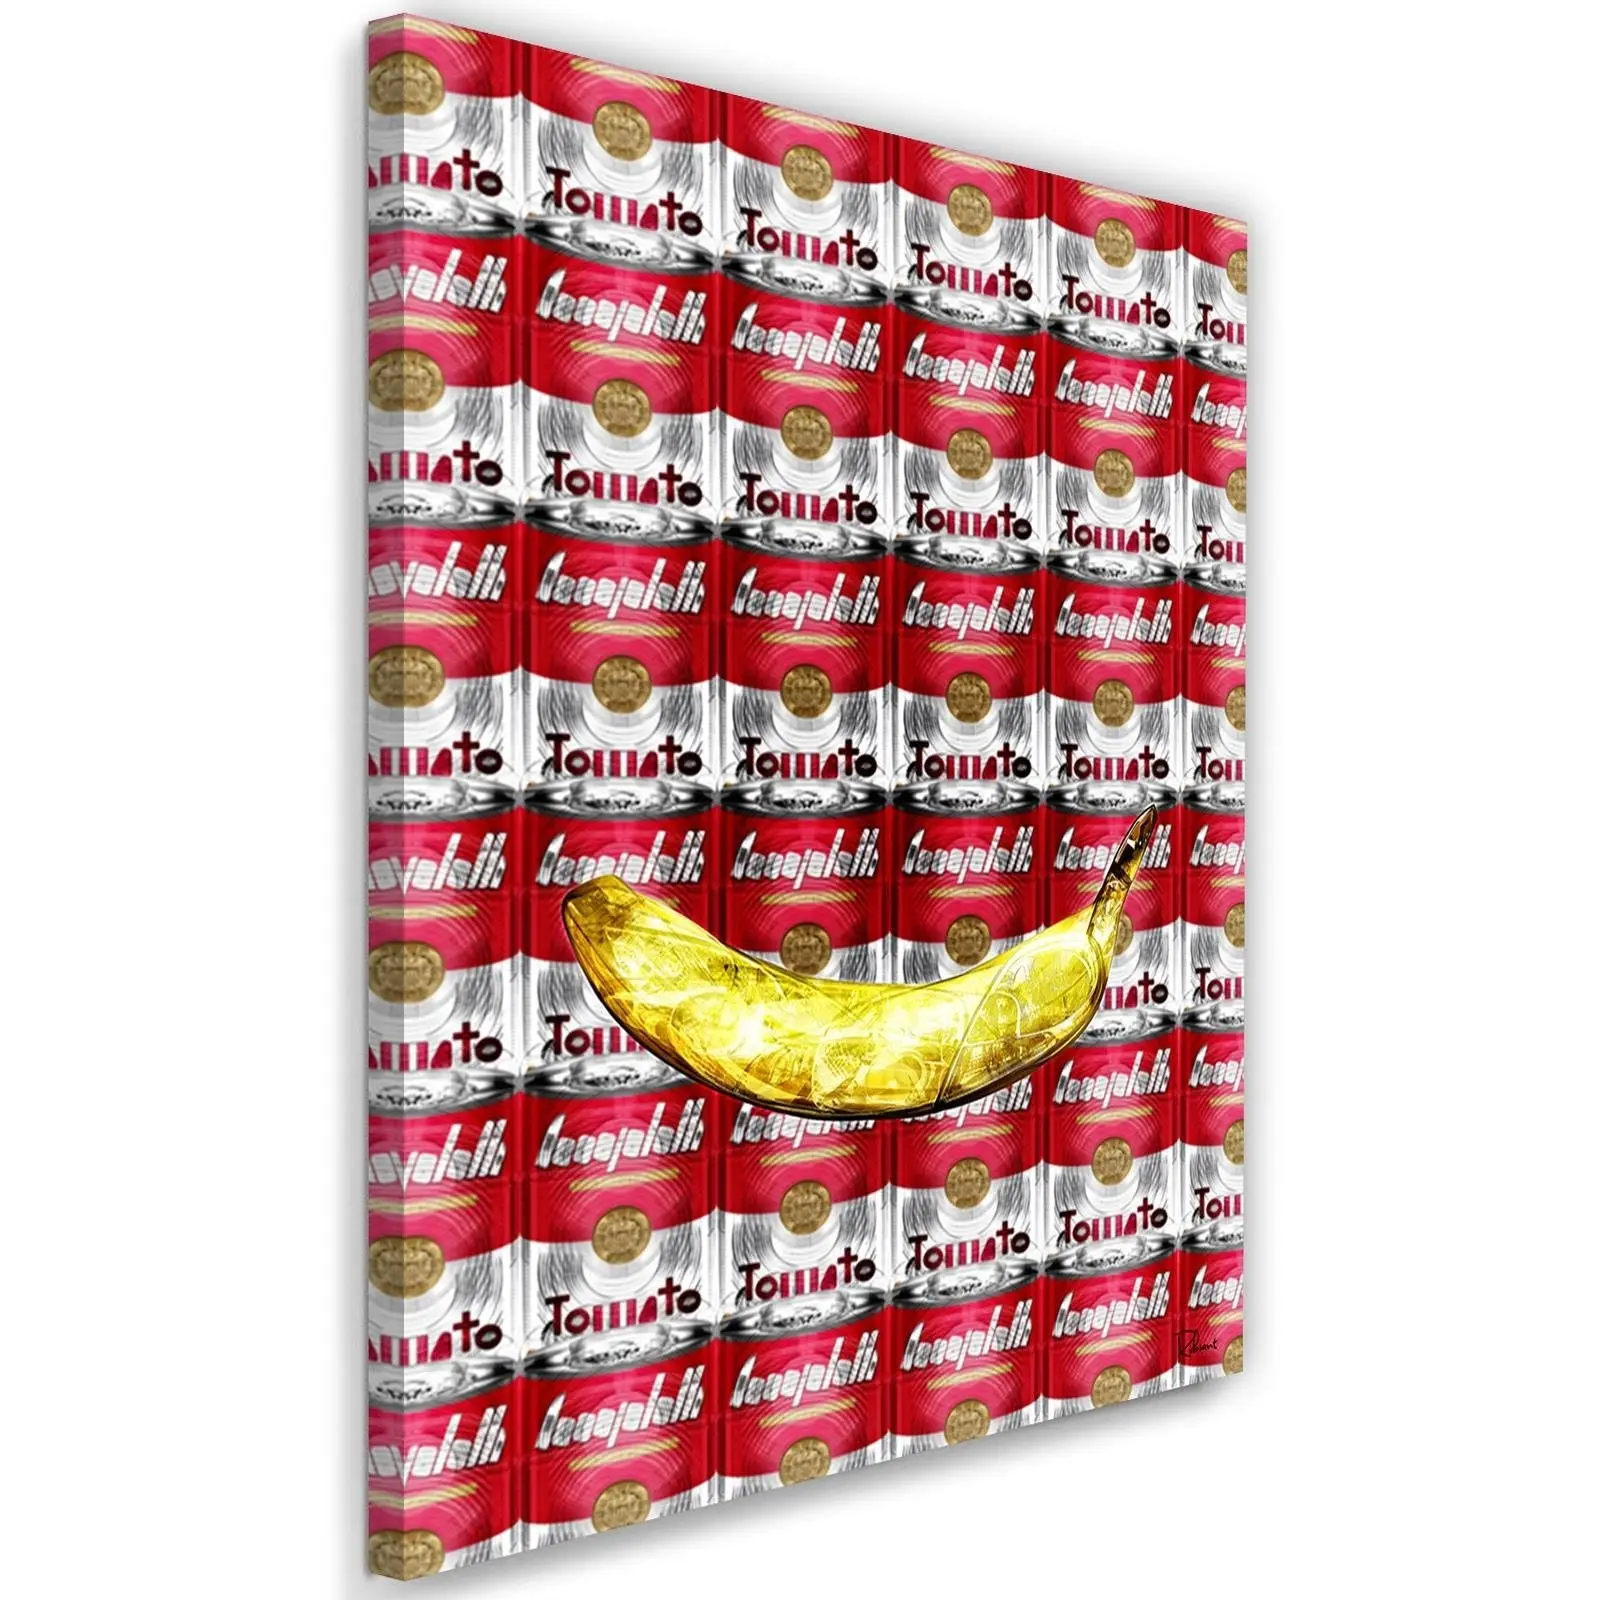 Tomato Banane und Pop-Art Wandbilder